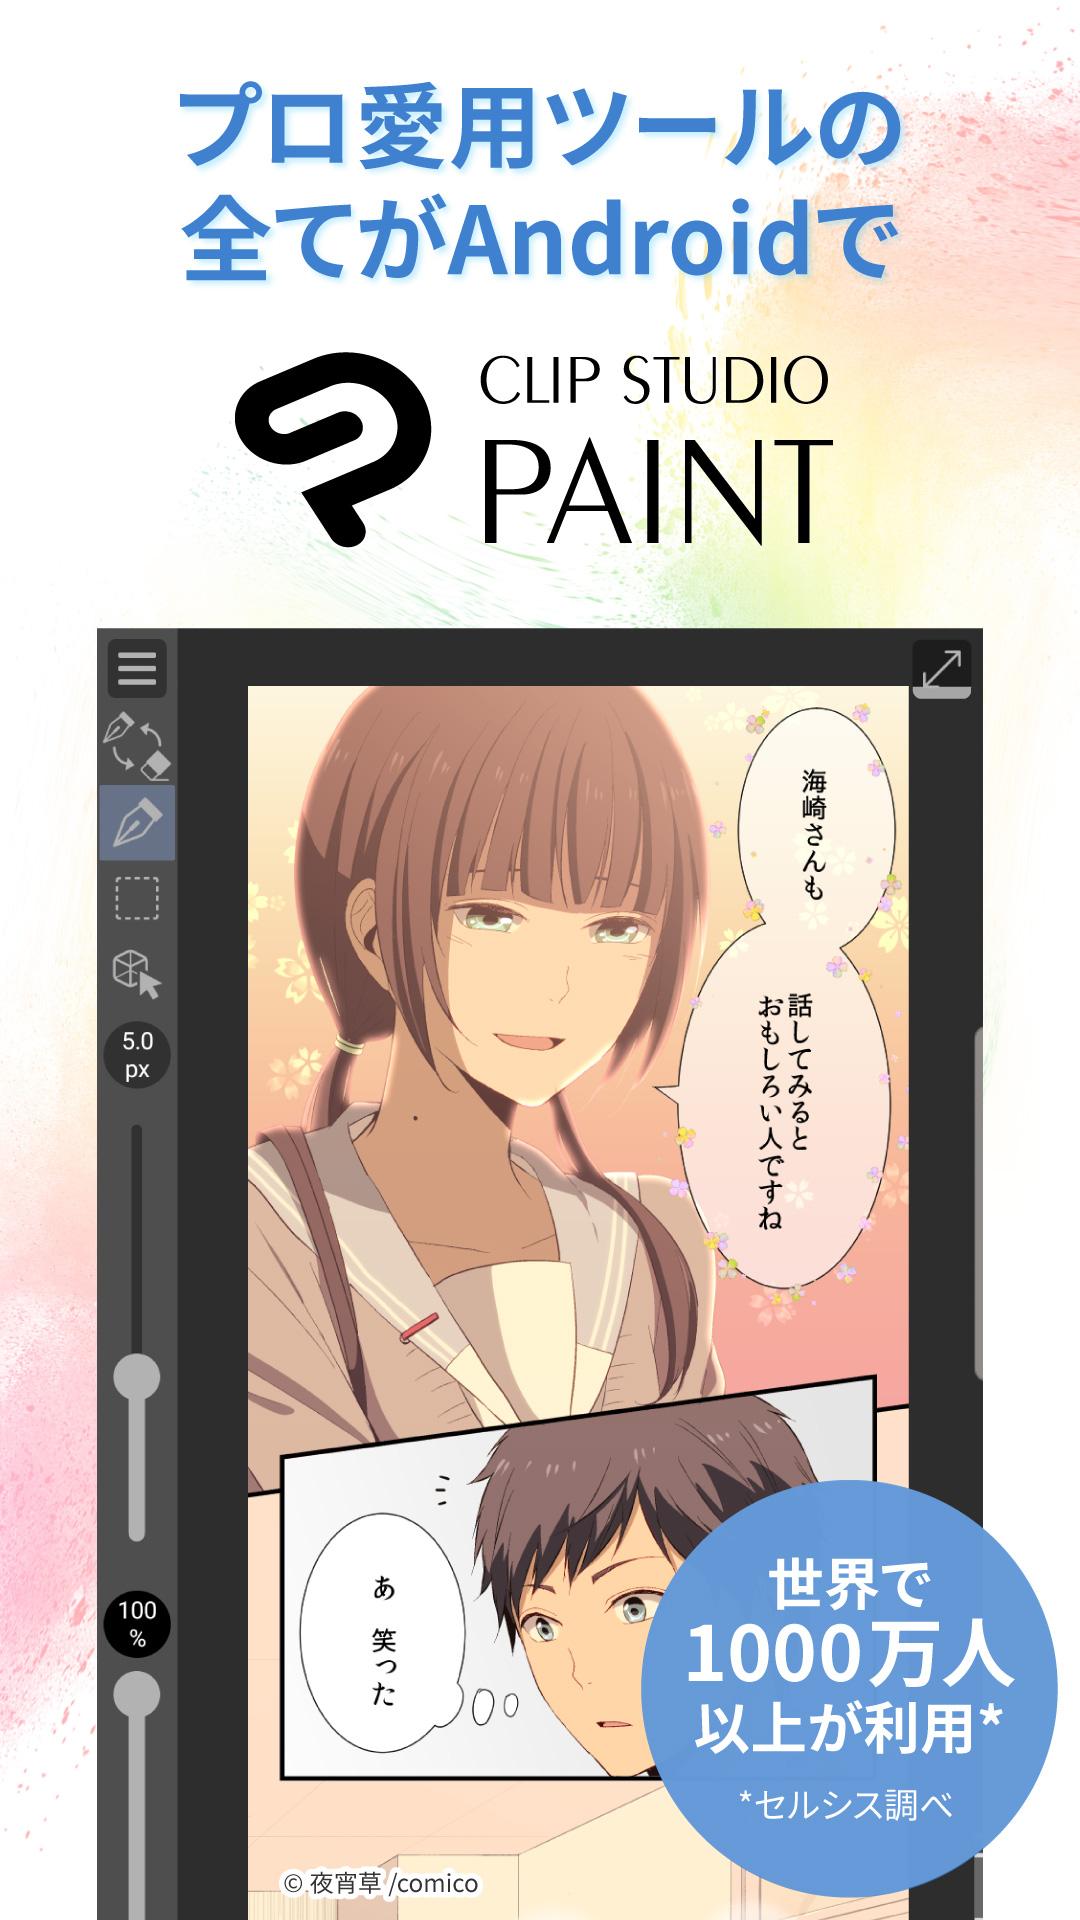 Android 用の Clip Studio Paint プロが愛用 マンガやイラスト アニメーションを自由に制作 Apk をダウンロード